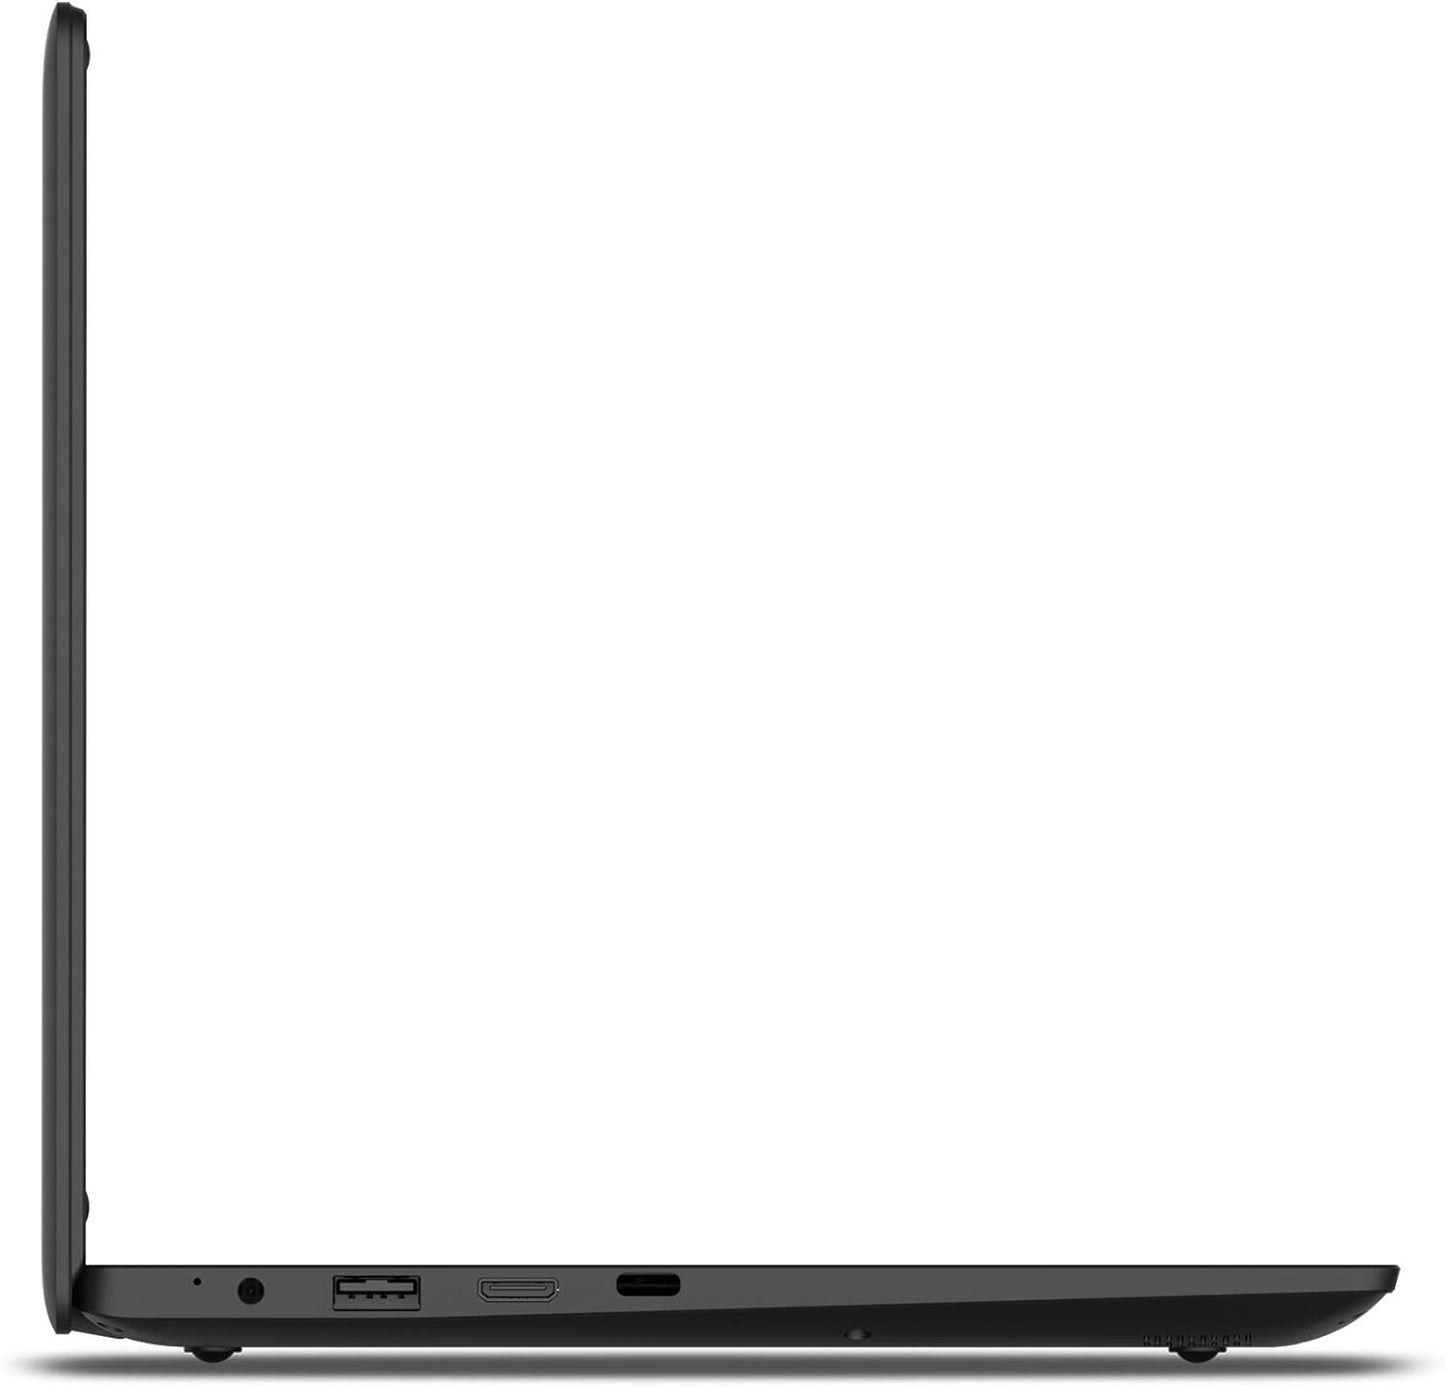 Packard Bell cloudBook 11.6" IPS HD Laptop, Intel Celeron N3450, 4GB, 64GB, Windows 10 Home, N11250BK